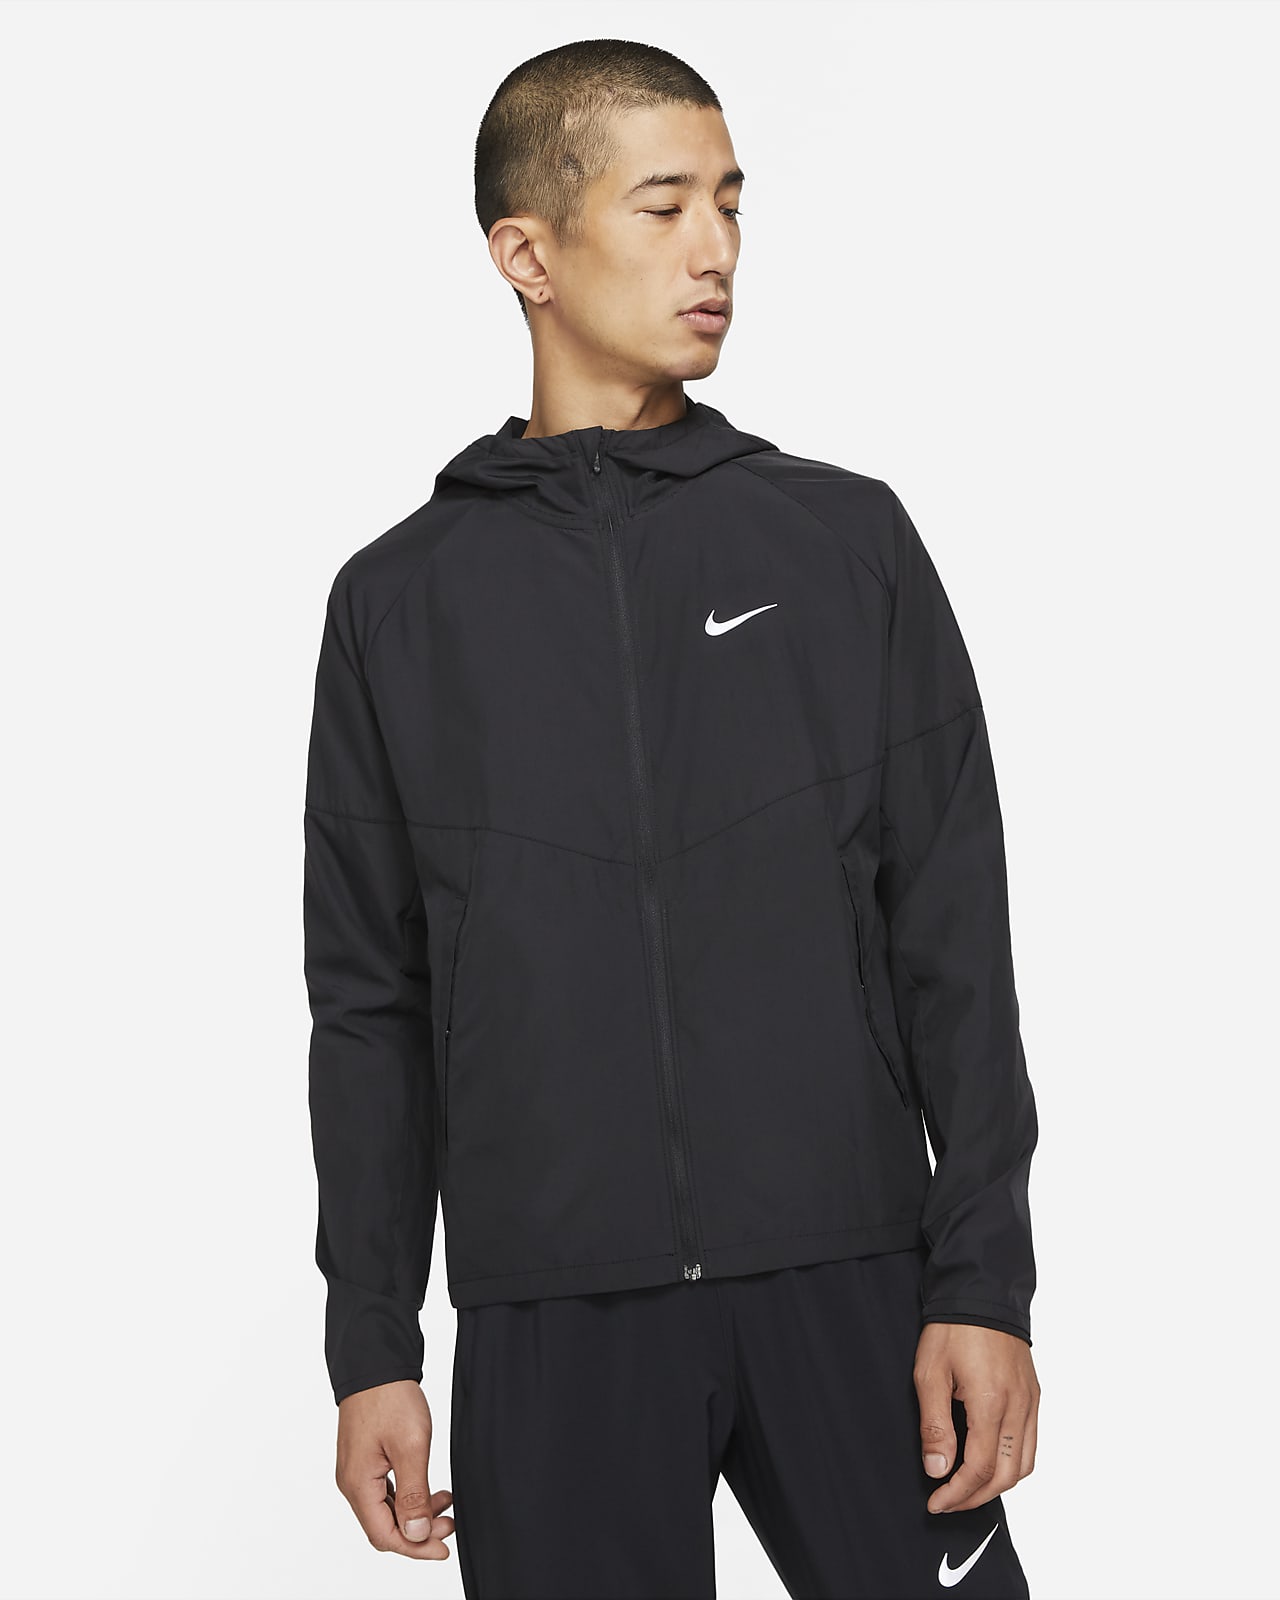 เสื้อแจ็คเก็ตวิ่งผู้ชาย Nike Repel Miler